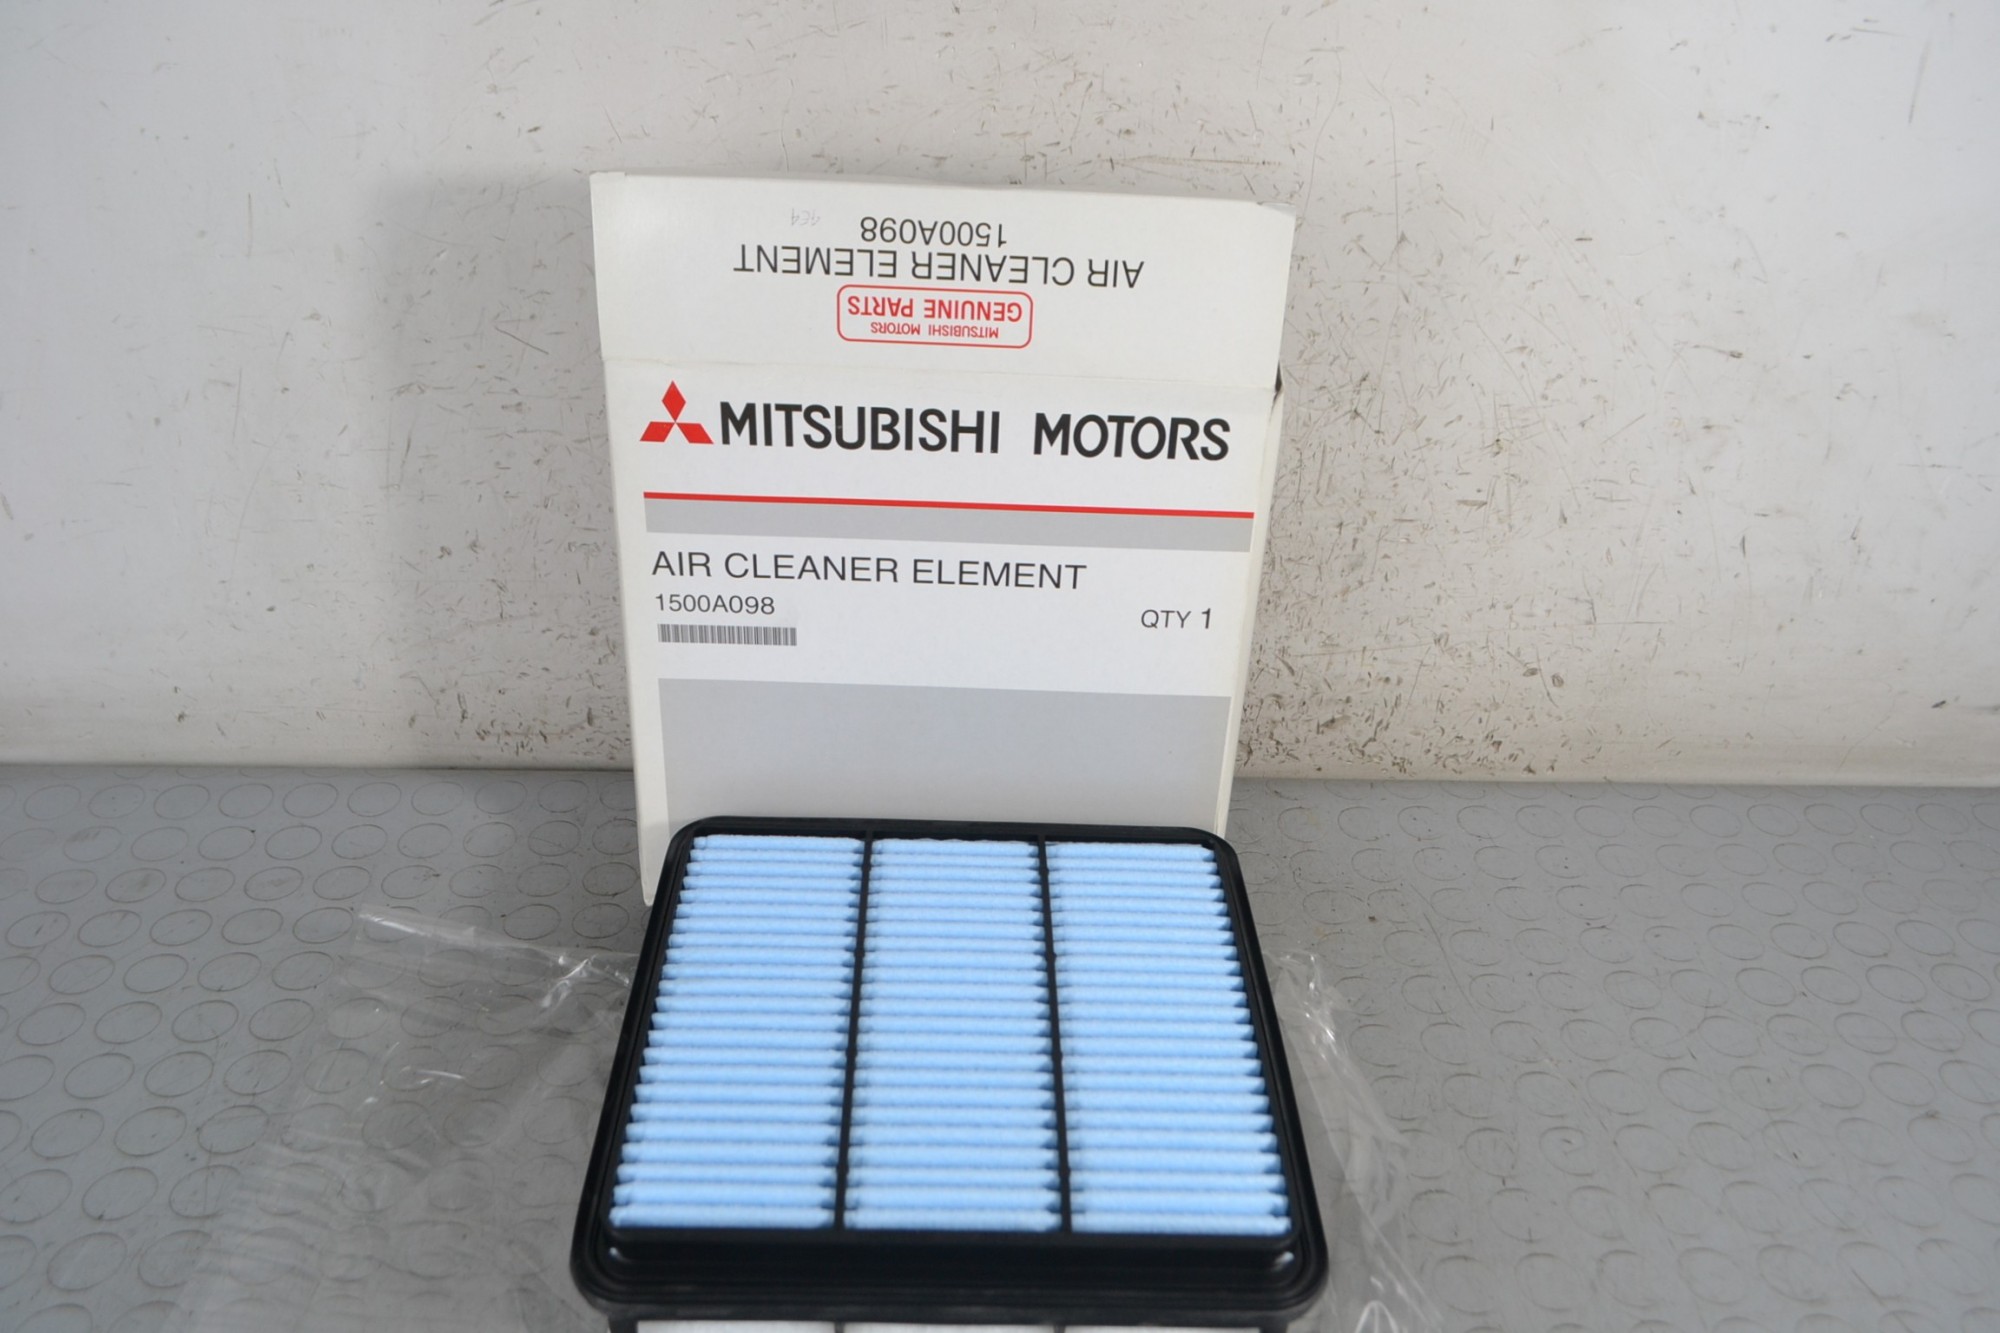 Filtro aria Mitsubishi L200 Dal 205 al 2015 Cod 1500A098 Motore Di-D 2.5cc 100kw 136 cv 131 kw 178 cv  1676478495830